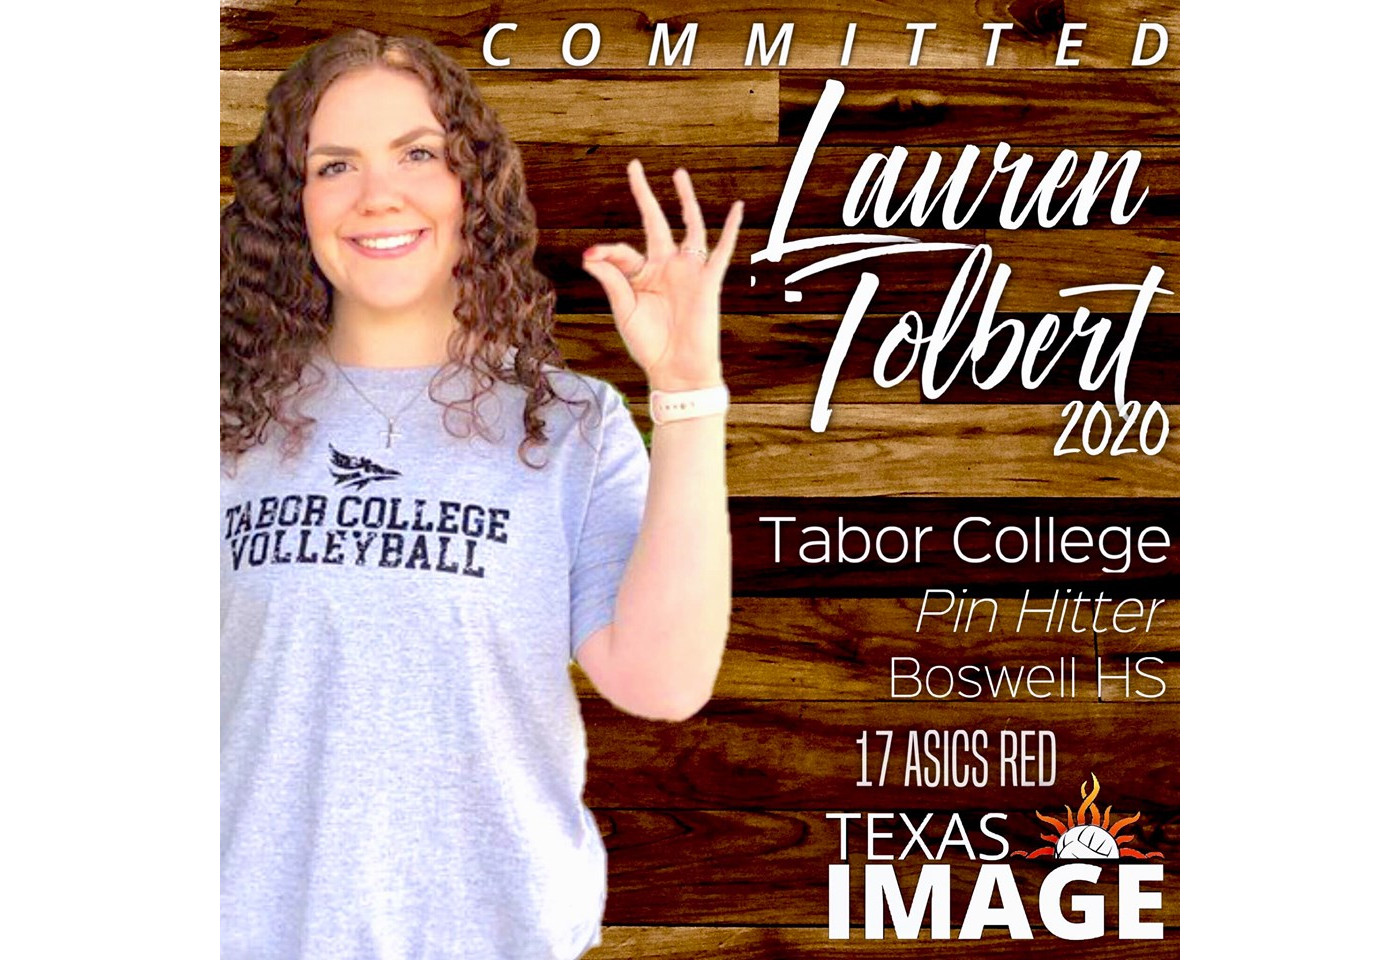 Lauren Tolbert - Tabor